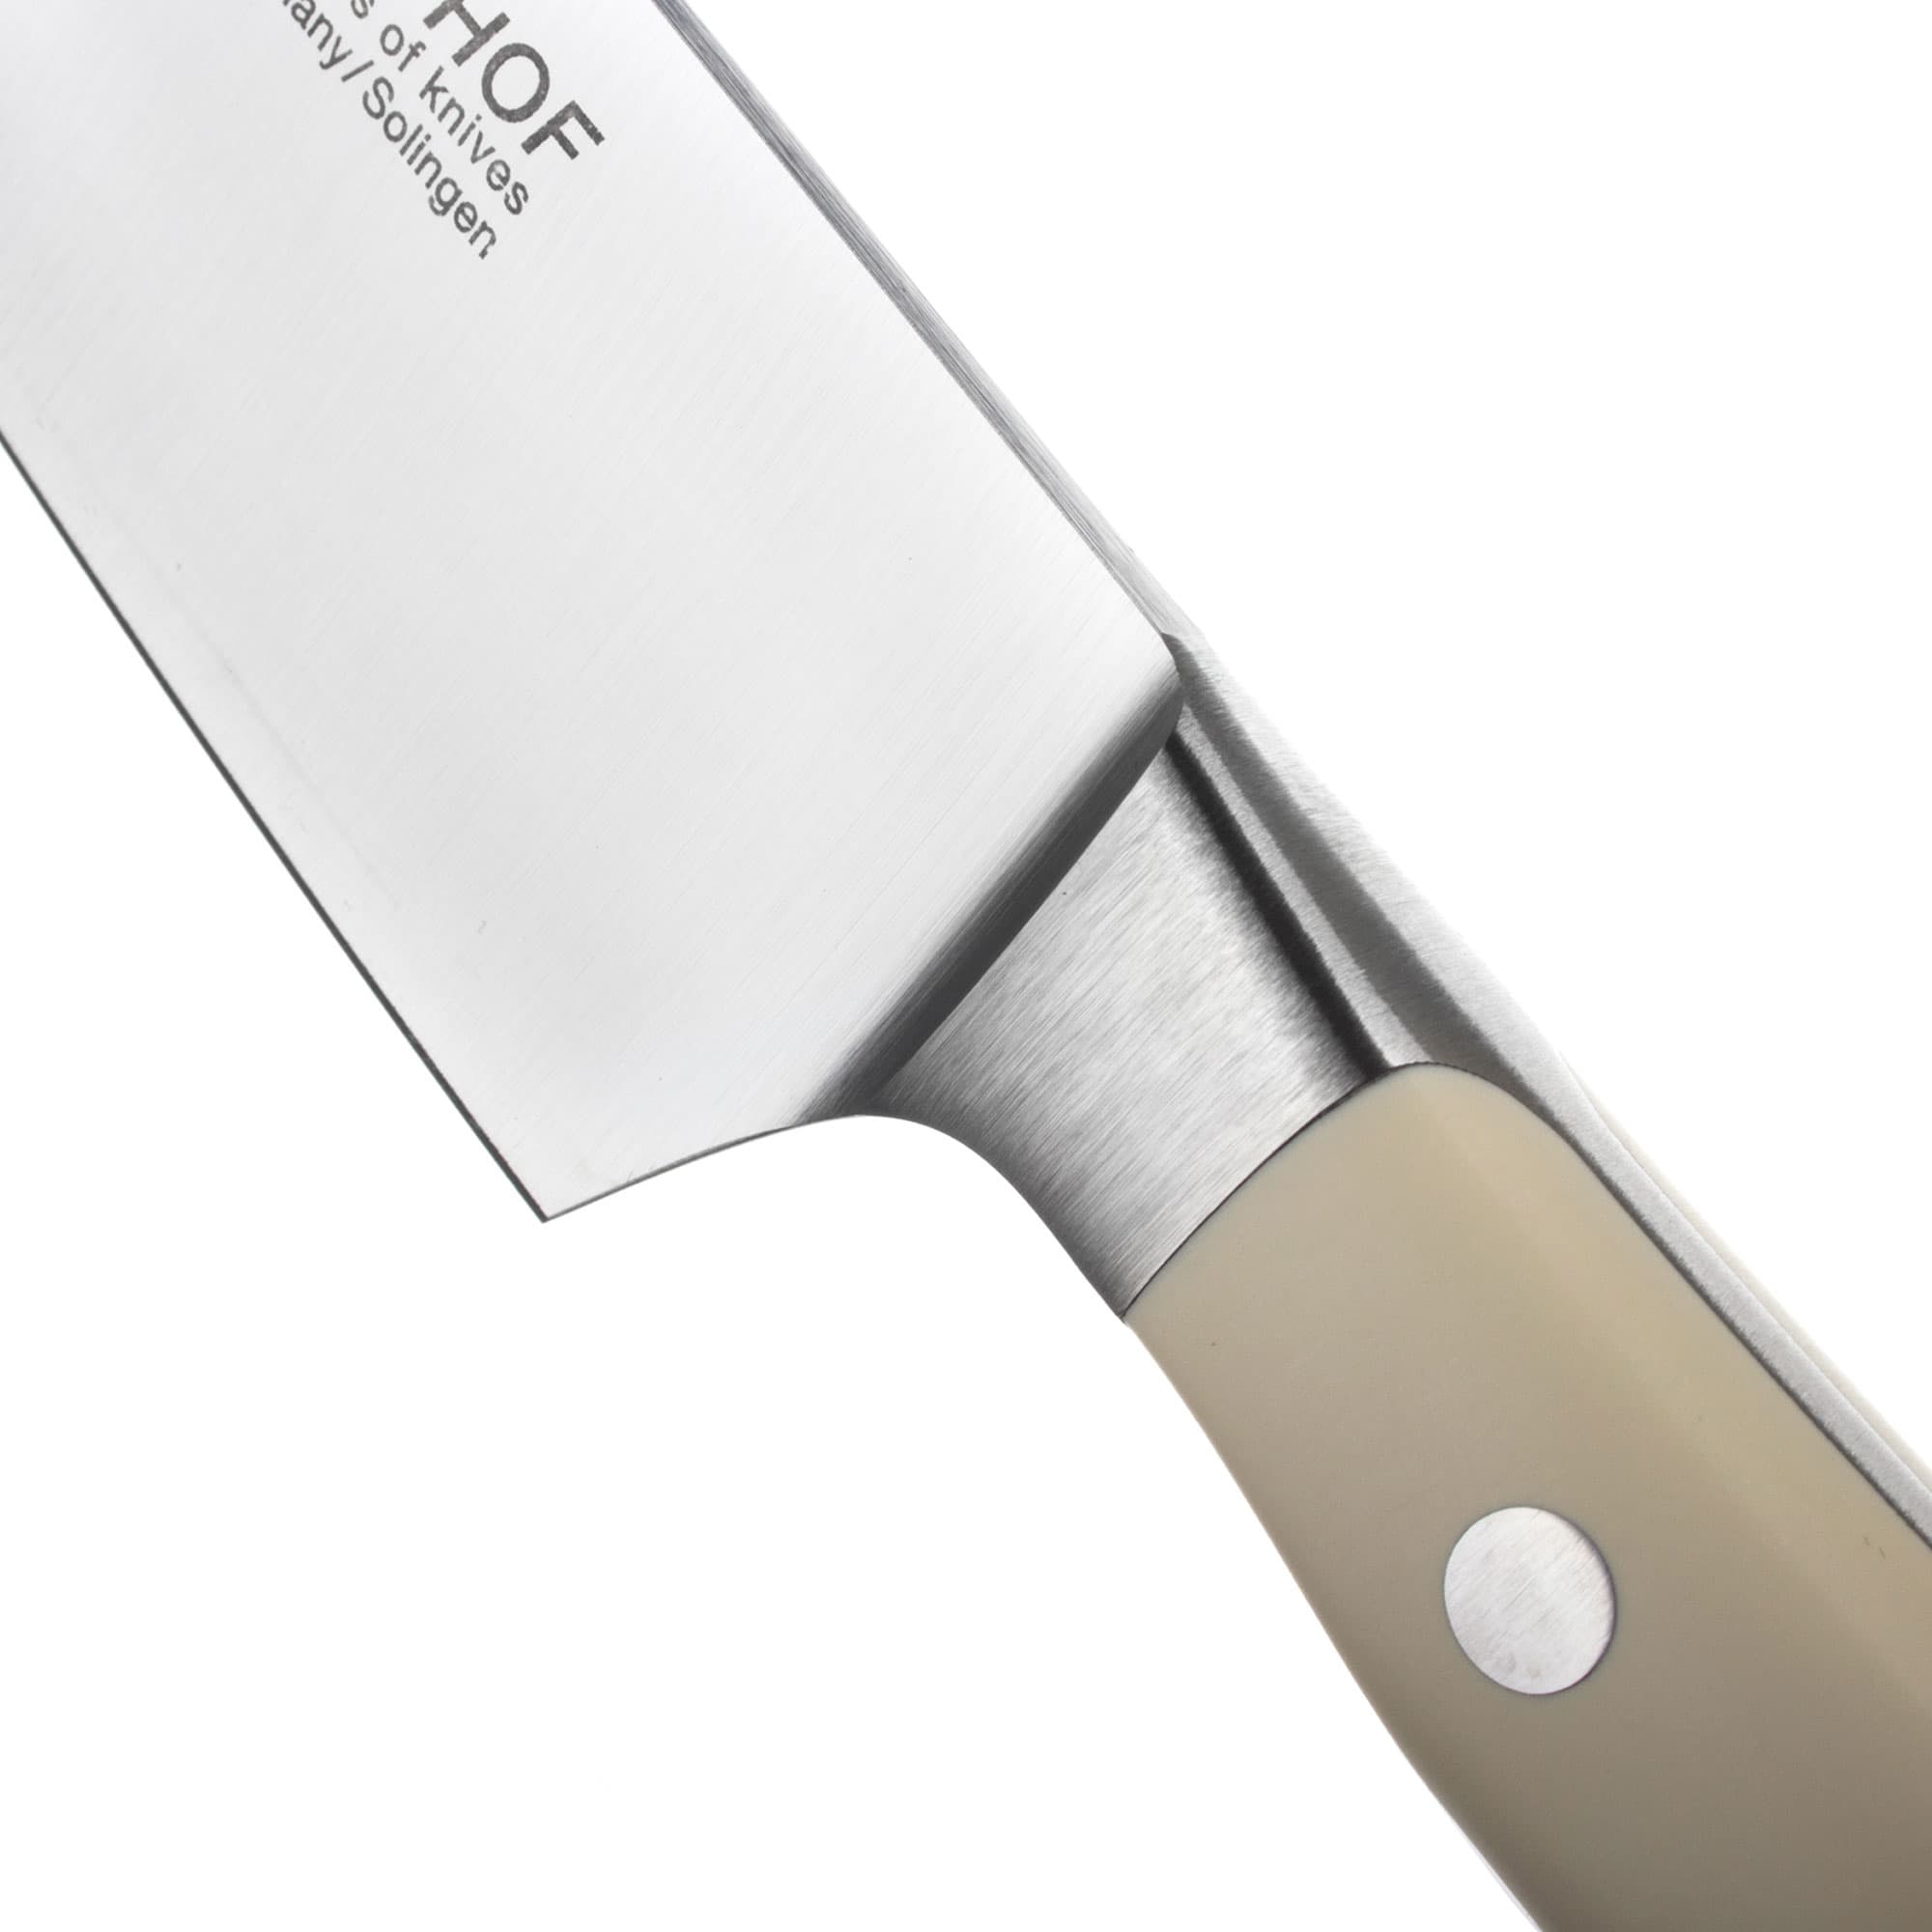 Профессиональный поварской кухонный нож 20 см, Ikon Cream White, WUESTHOF, Золинген, Германия